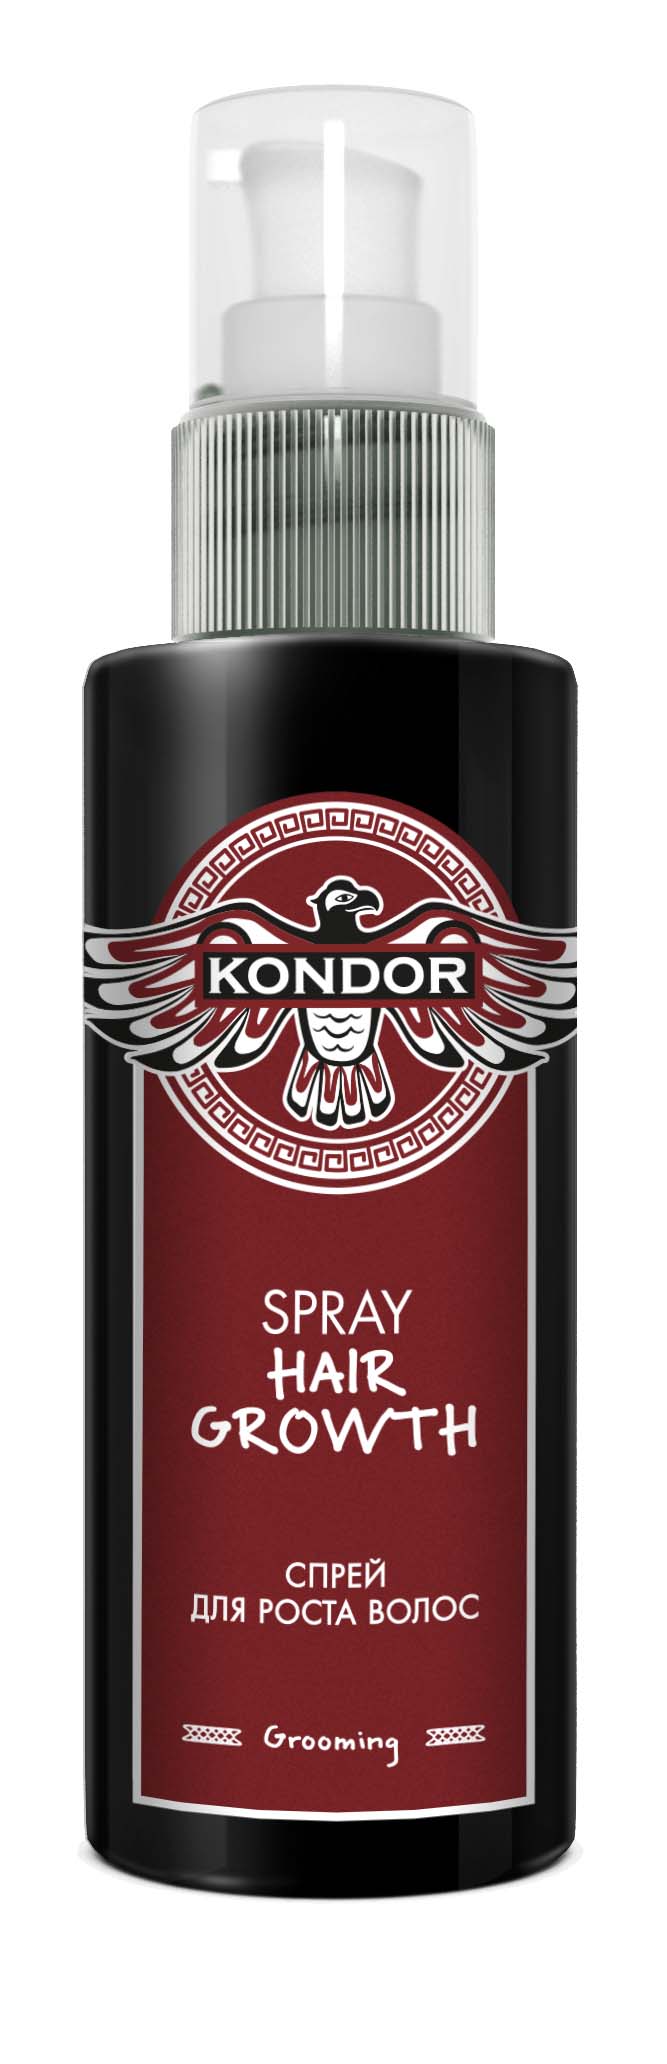 Спрей для волос для мужчин. Спрей солевой Кондор 100мл. Kondor спрей морская соль. Kondor, спрей для роста волос, 100 мл. Kondor спрей для укладки волос морская соль.